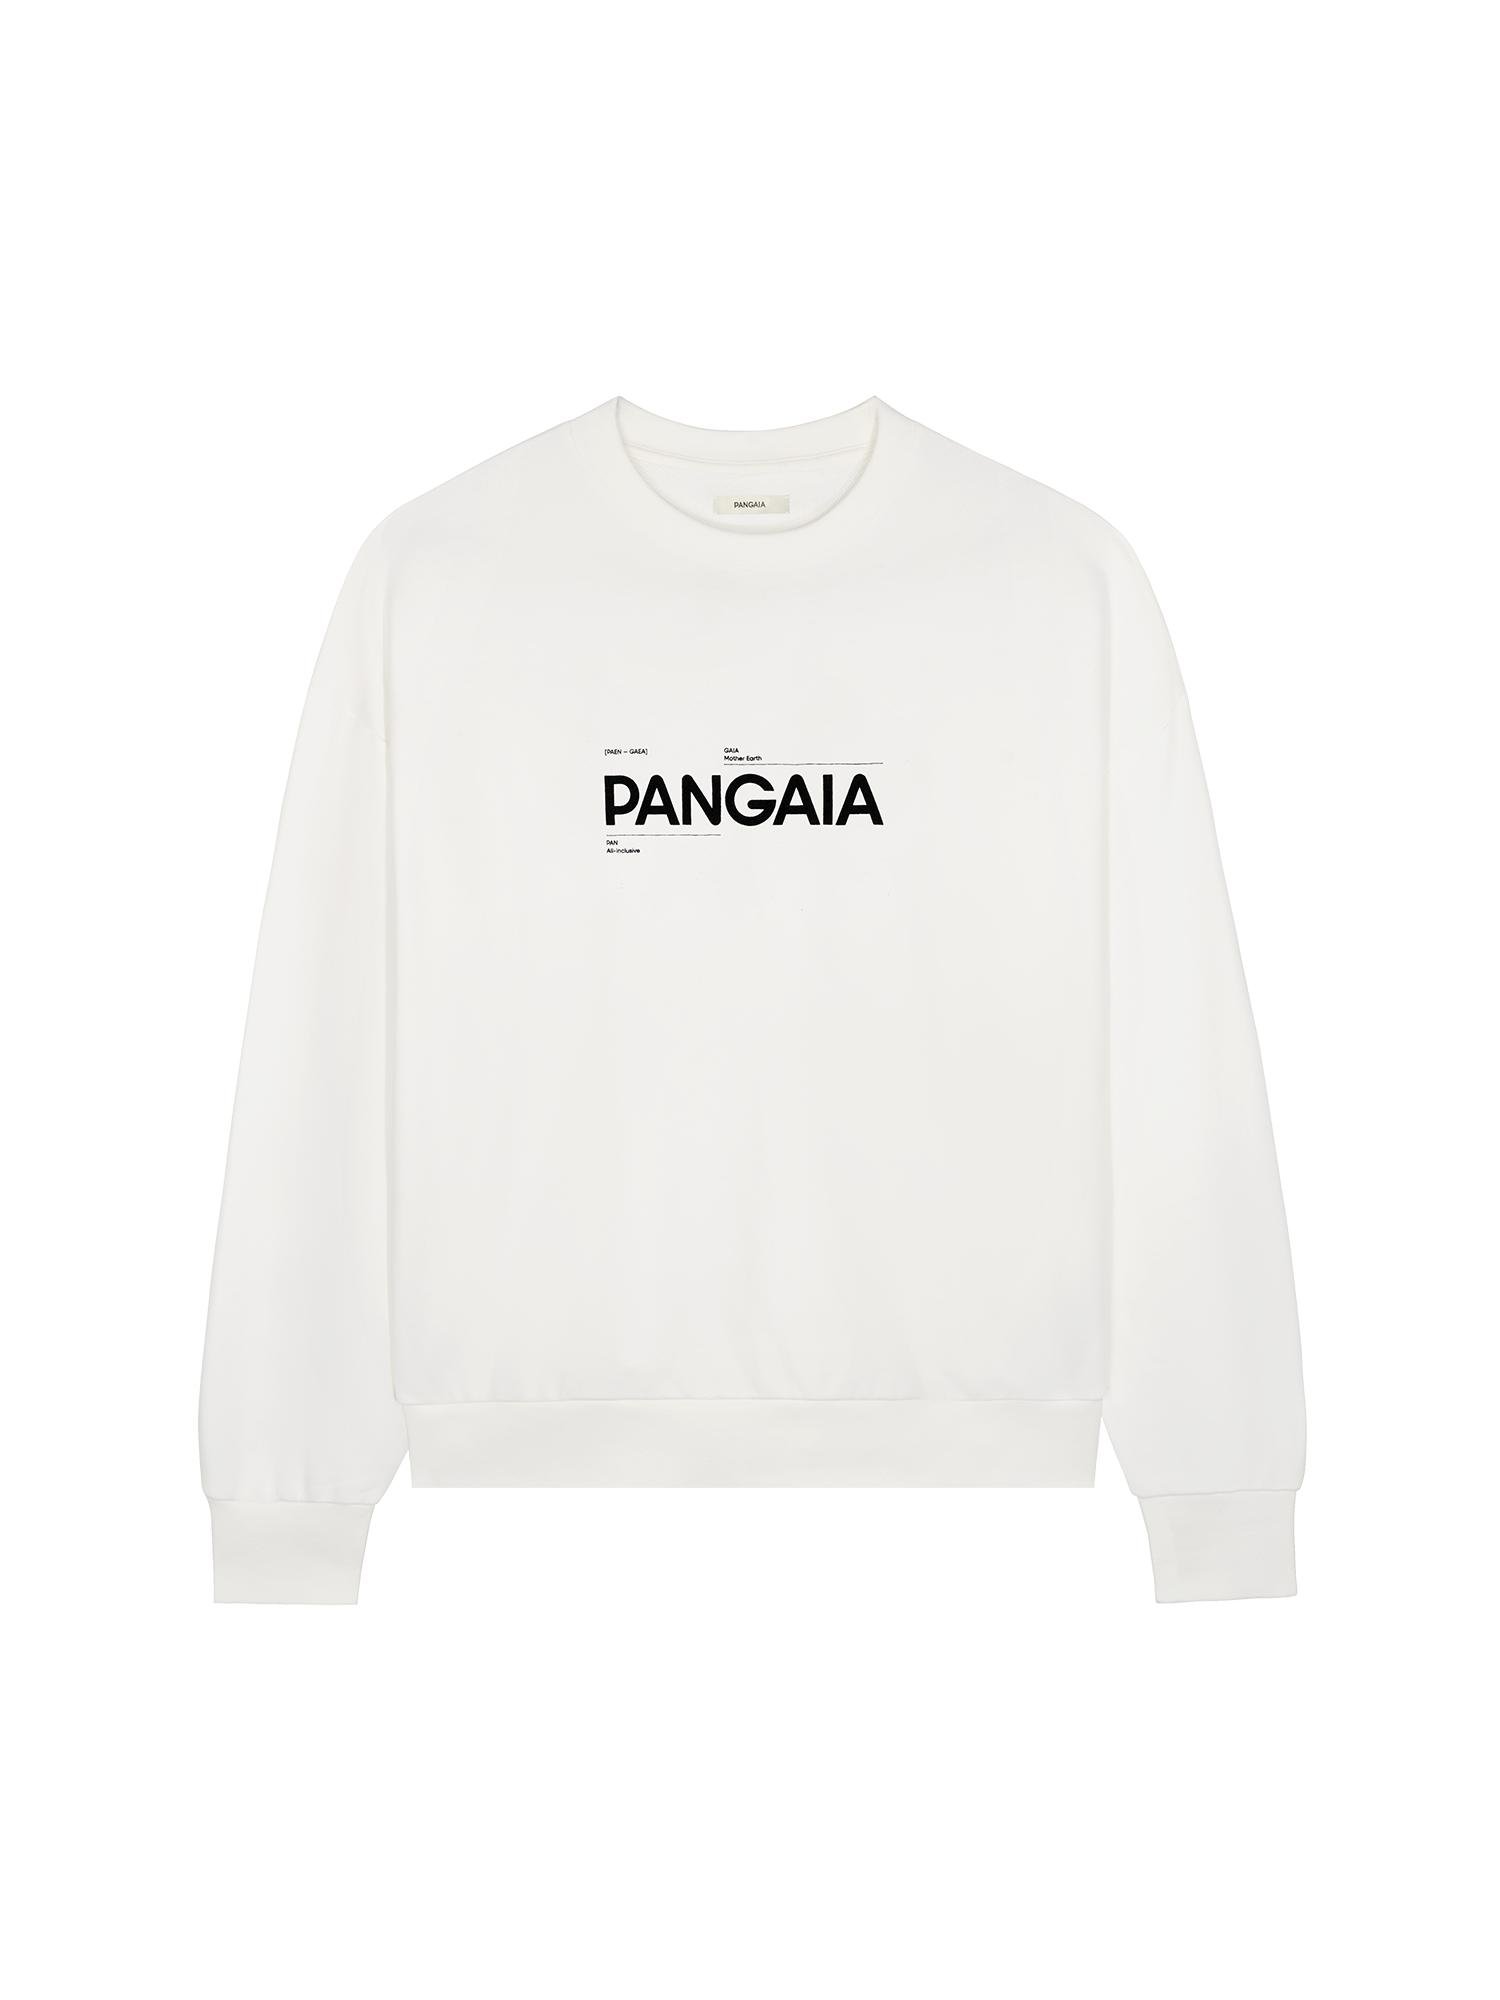 365 Midweight Definition Sweatshirt by PANGAIA